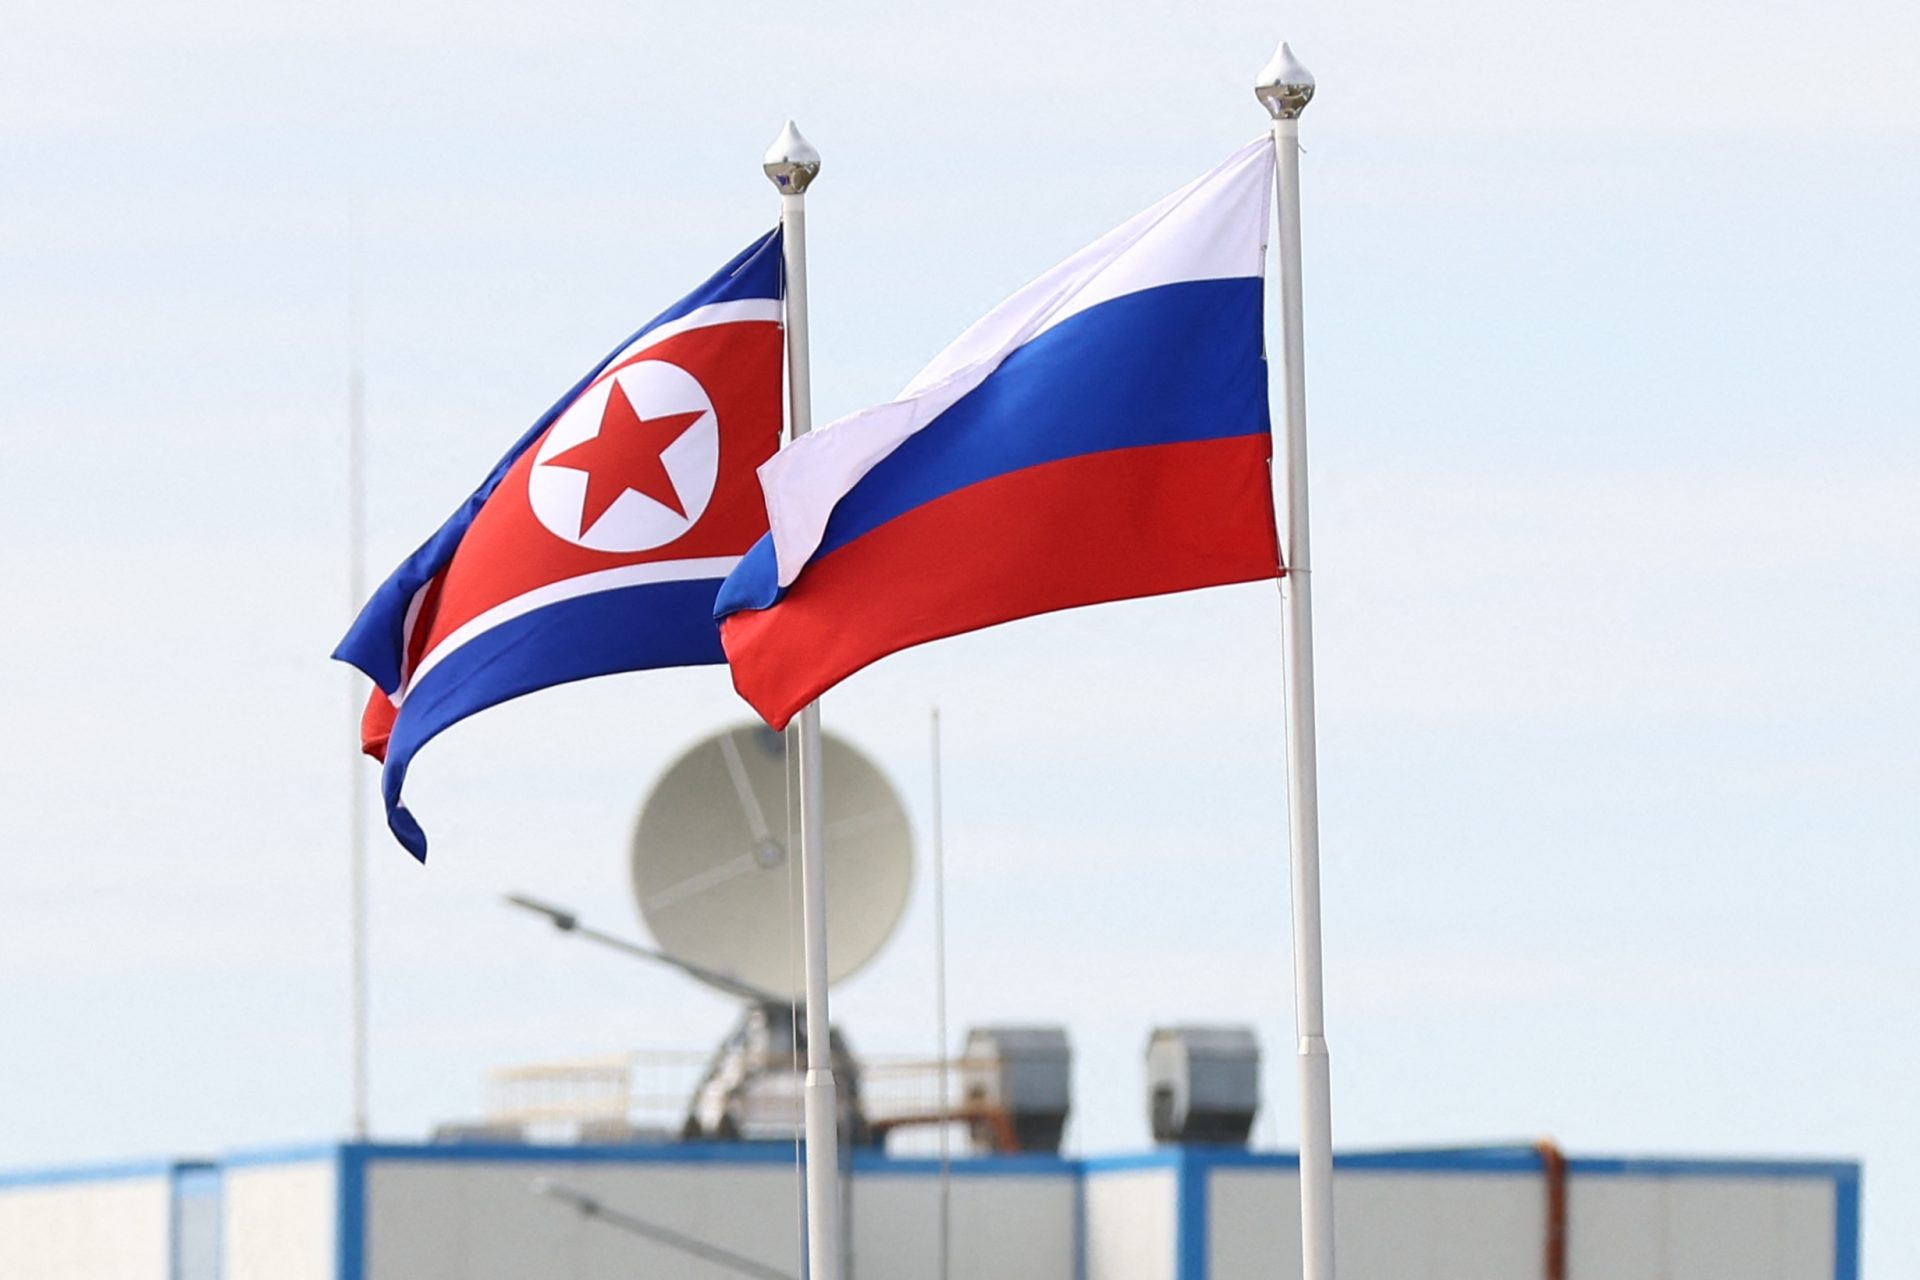 Noord-Koreaanse levering artilleriegranaten aan Rusland vermoedelijk stopgezet